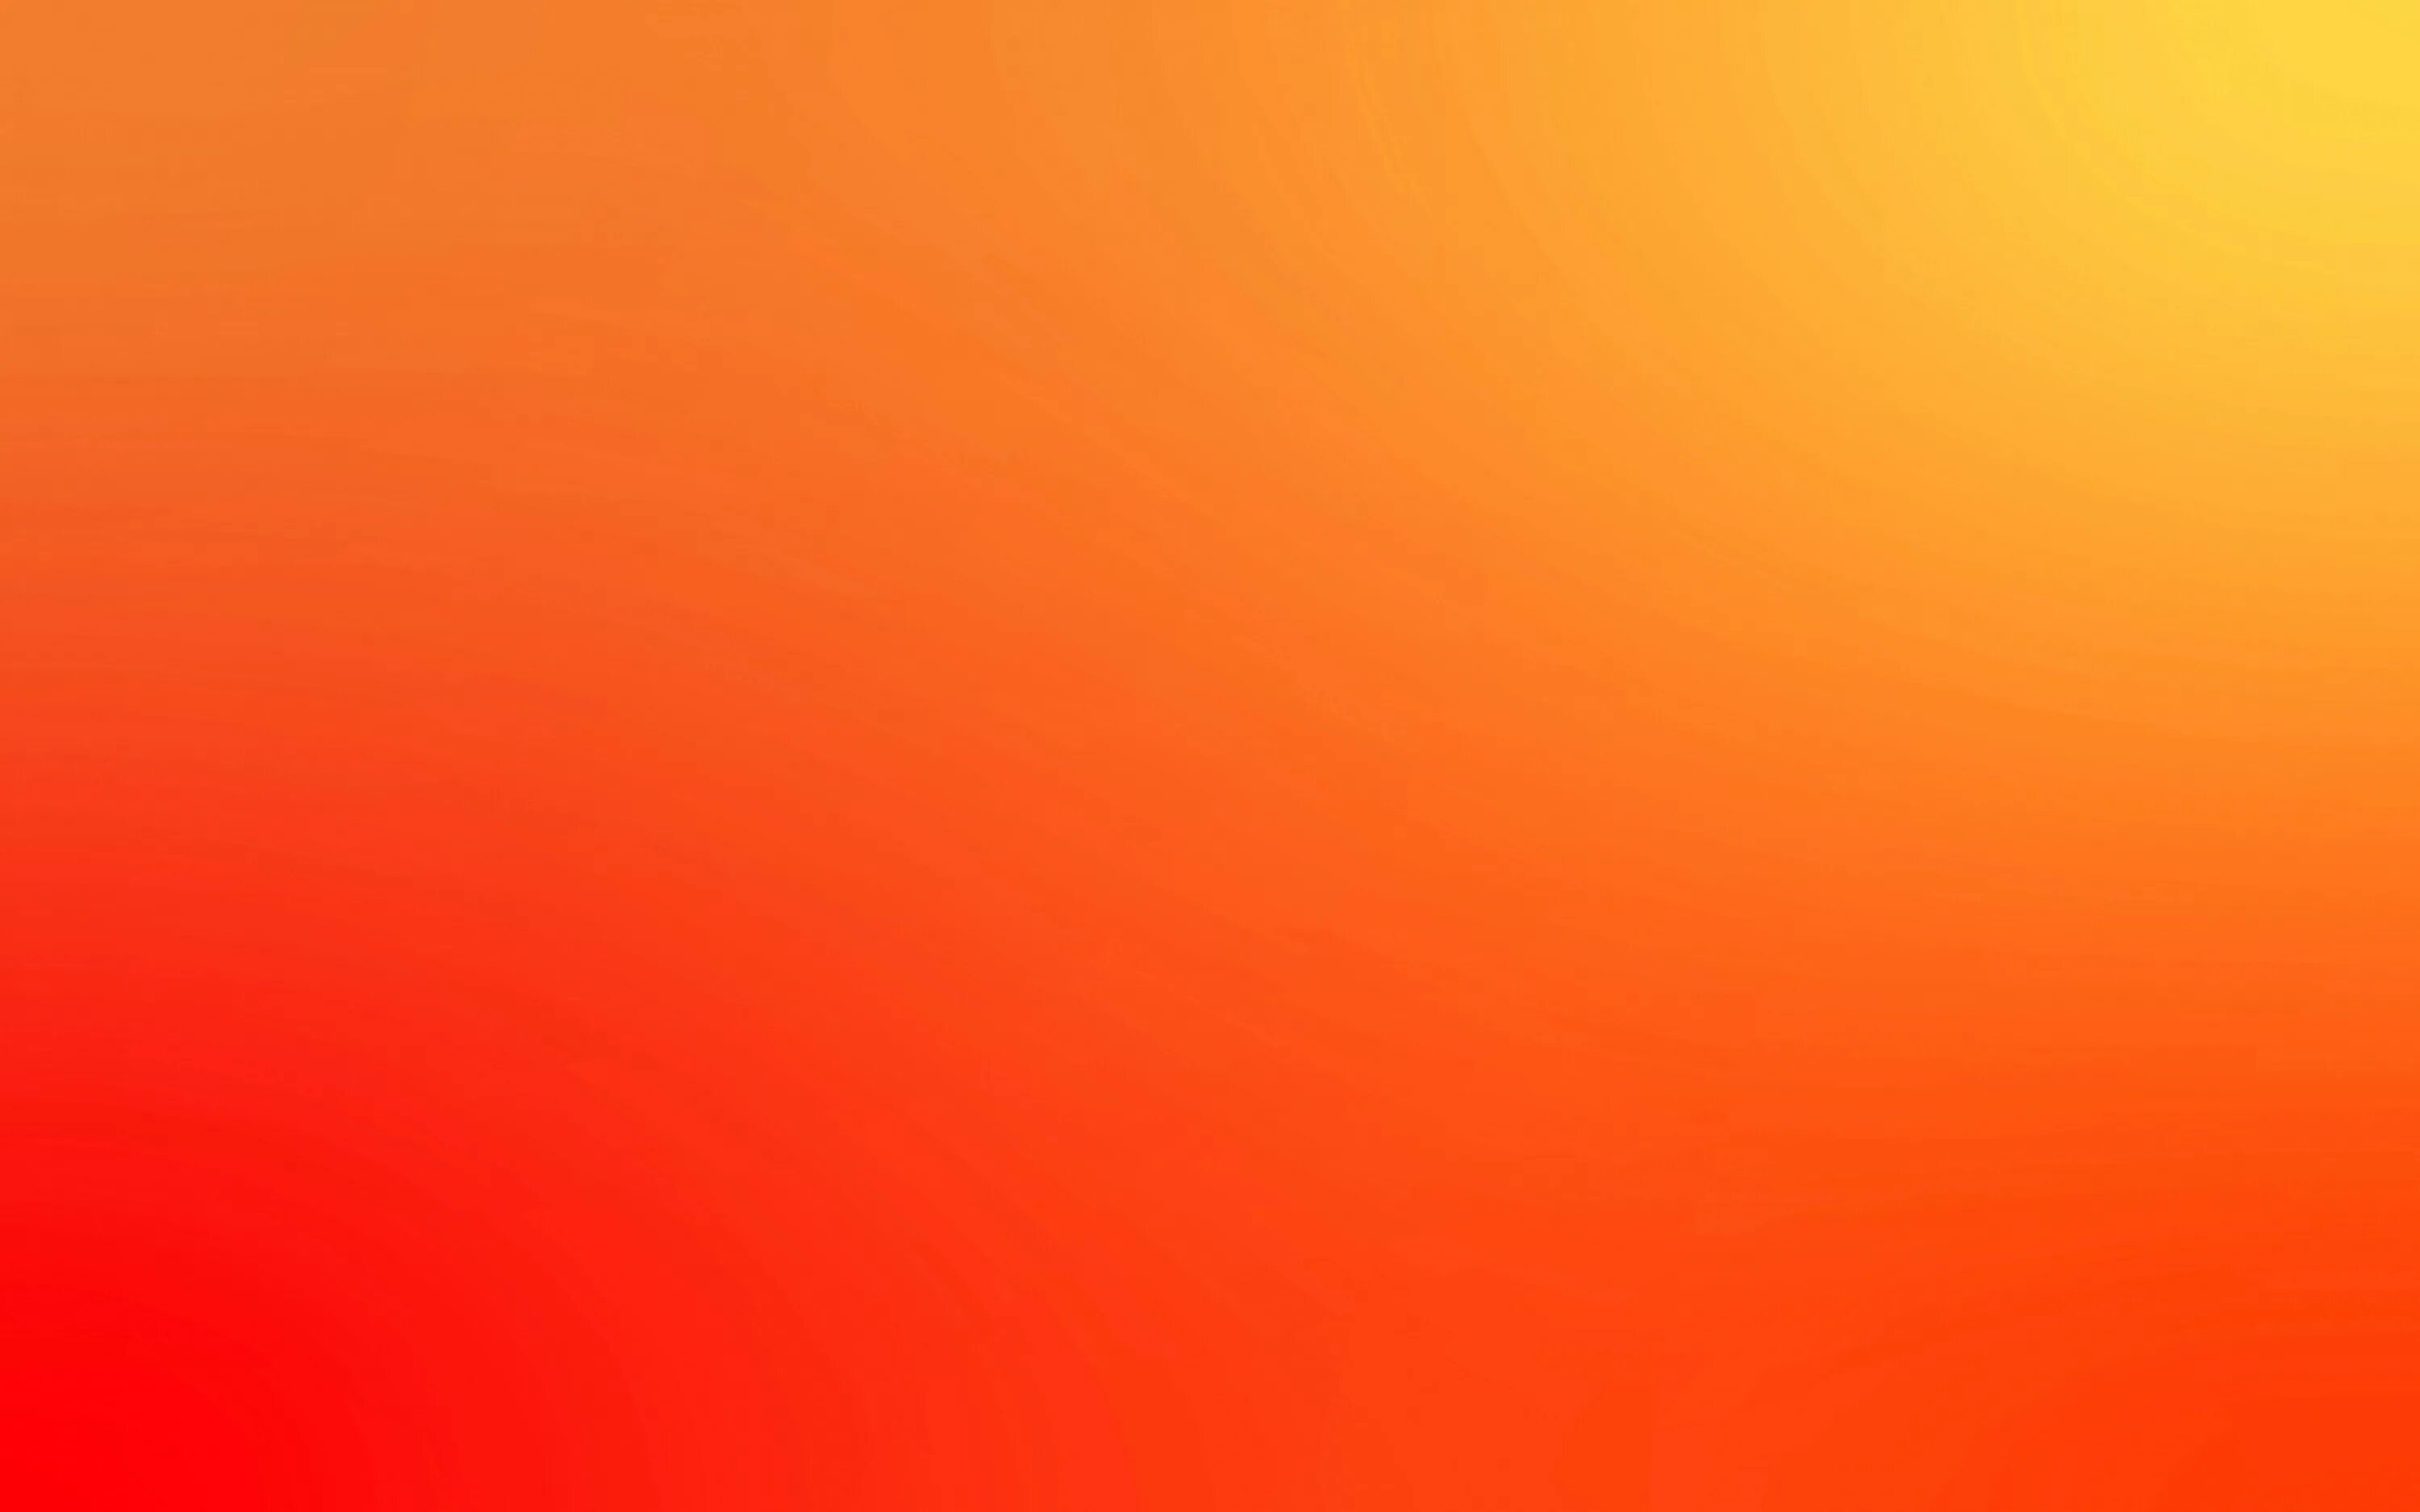 Оранжевый сайт 18. Красно оранжевый градиент. Желто оранжевый градиент. Оранжевый фон. Градиент с оранжевым цветом.